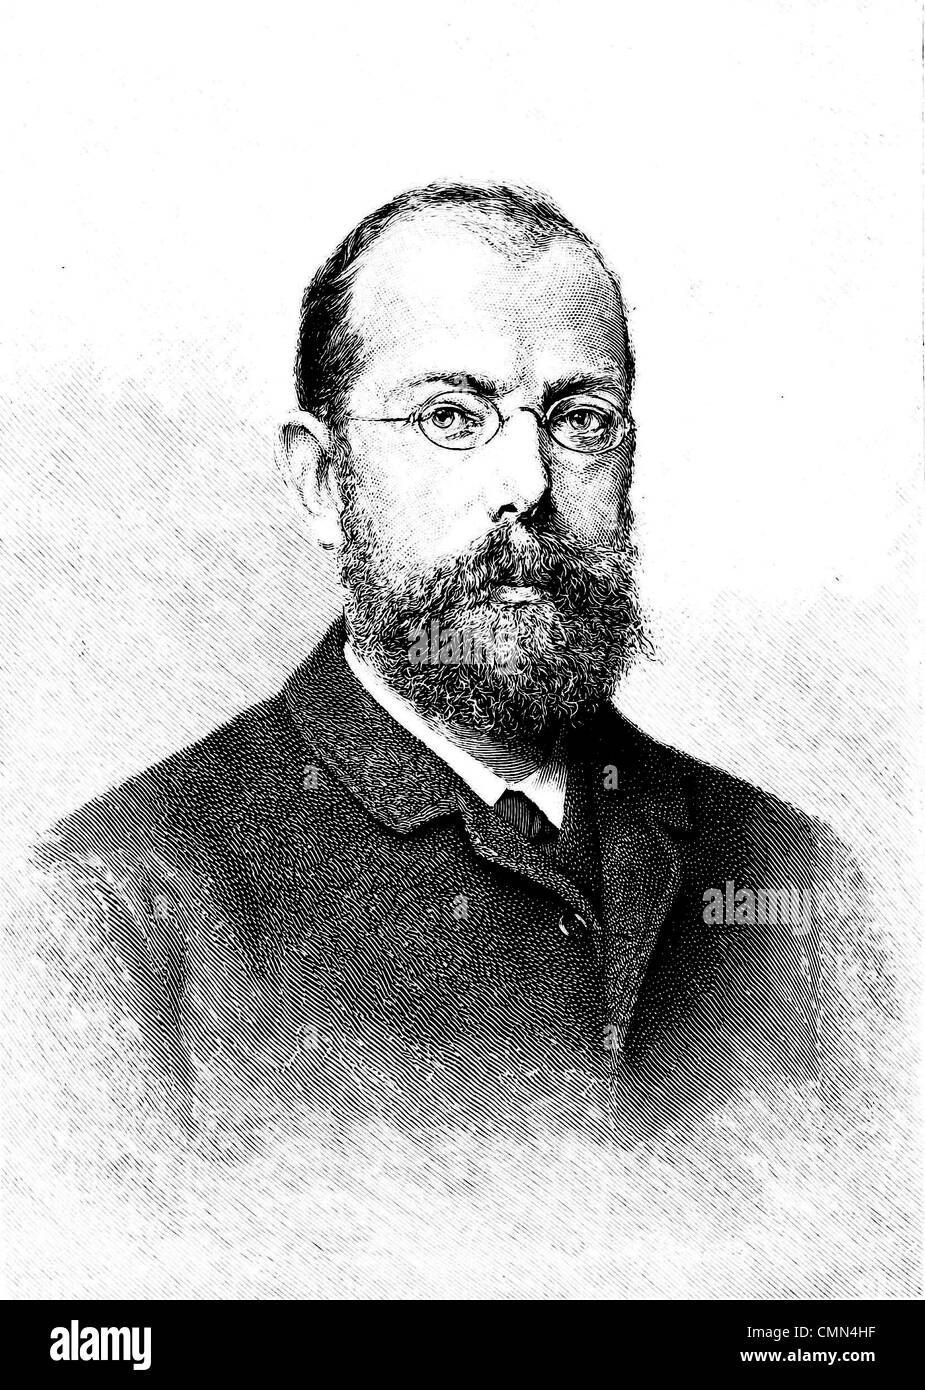 ROBERT KOCH (1843-1910), deutscher Arzt, der Cholera, Milzbrand und  Tuberkulose-Bakterien isoliert Stockfotografie - Alamy